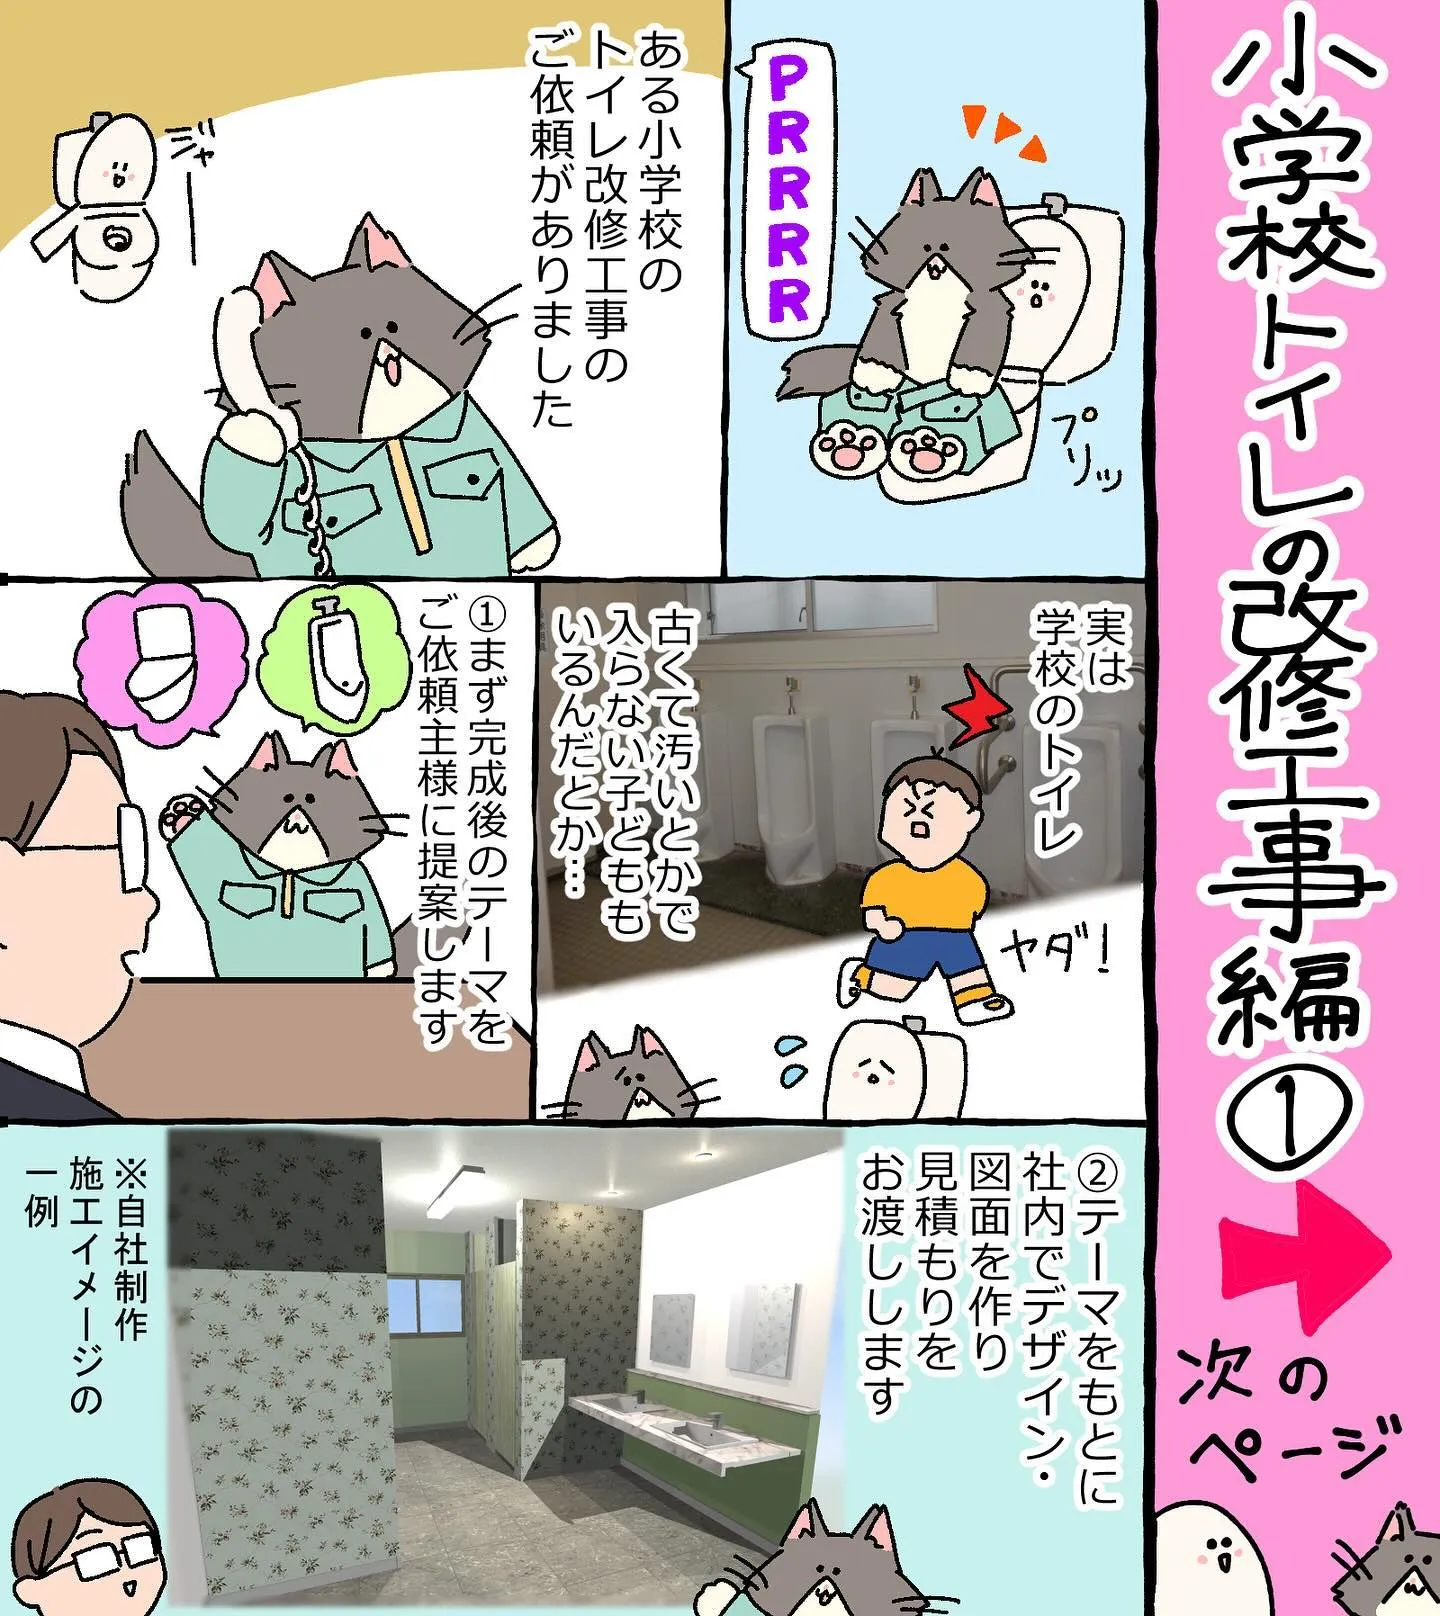 【漫画】小学校トイレの改修工事